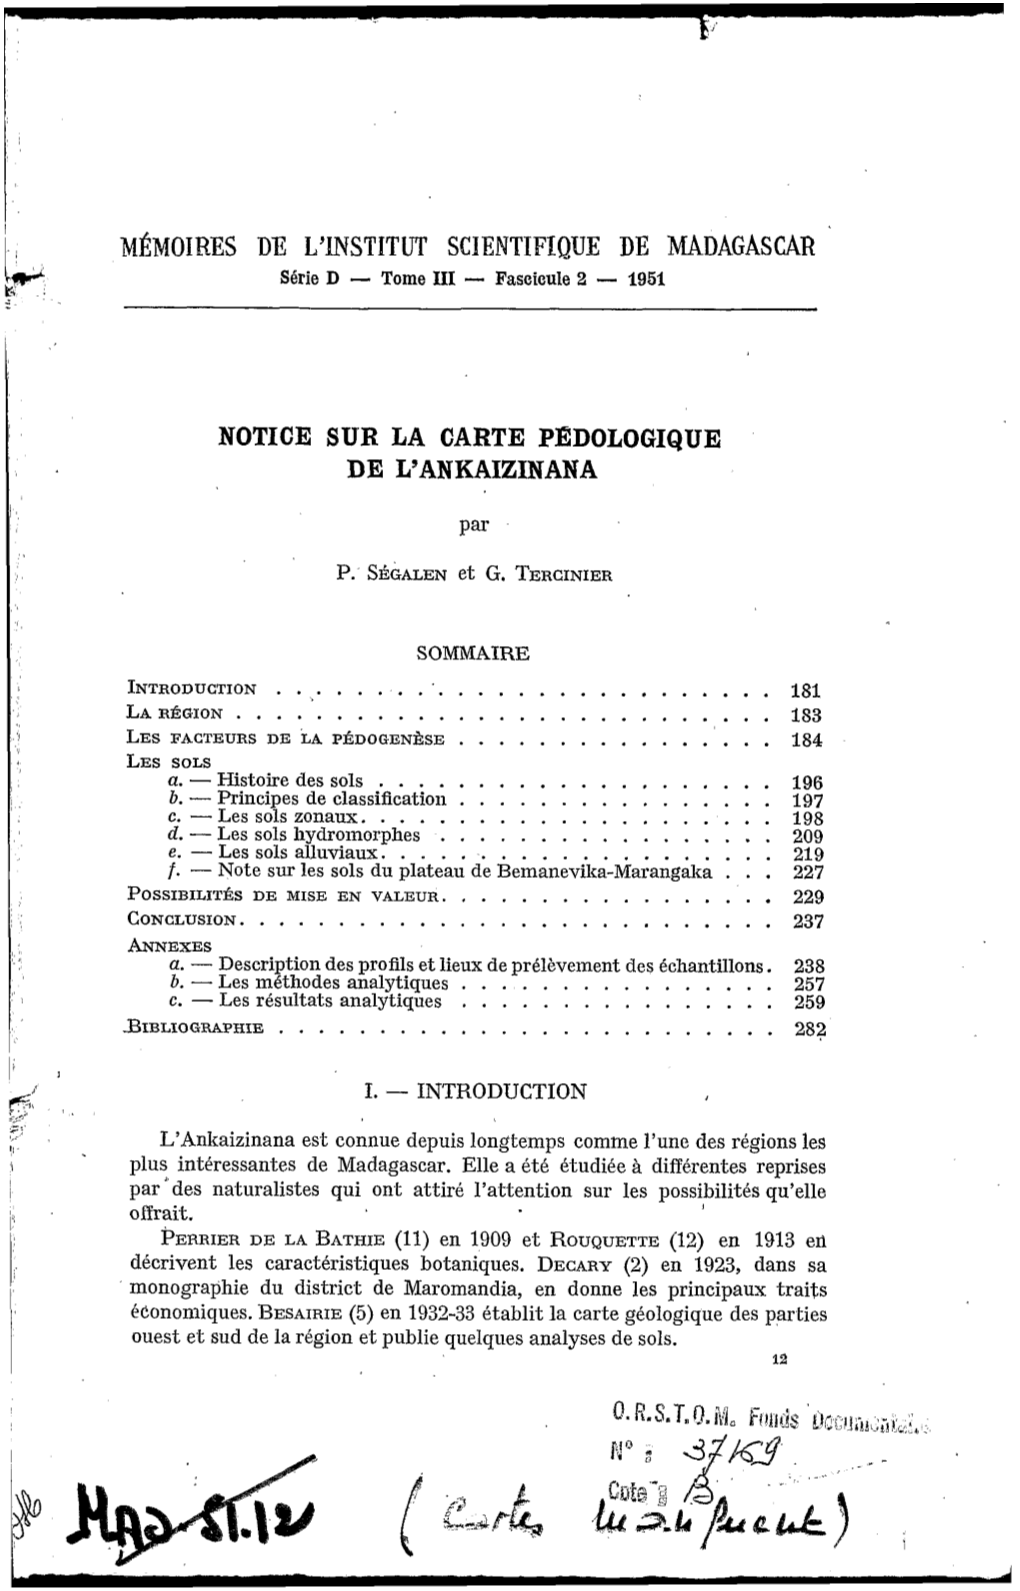 Notice Sur La Carte Pédologique De L'ankaizinana